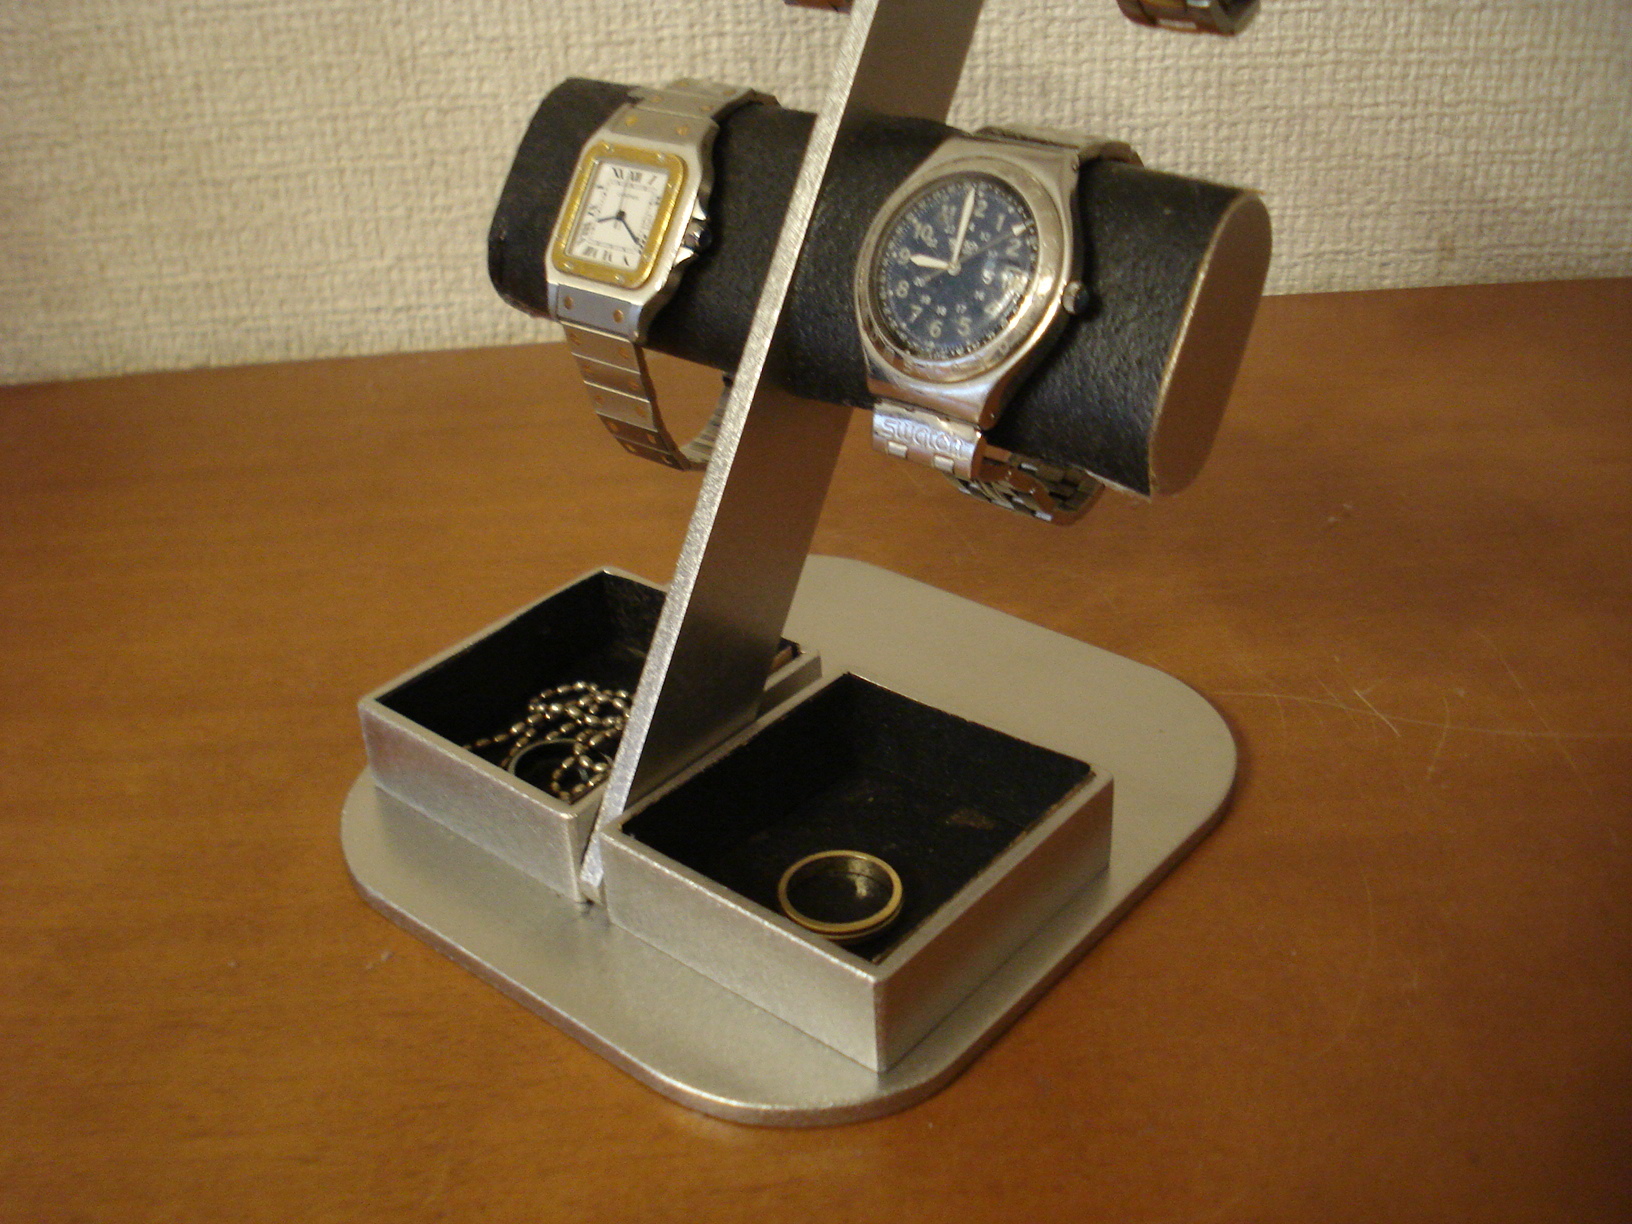 時計スタンド 腕時計 飾る ブラック4本掛け楕円ダブルトレイディスプレイスタンド 130105 | 腕時計スタンドのAKデザイン